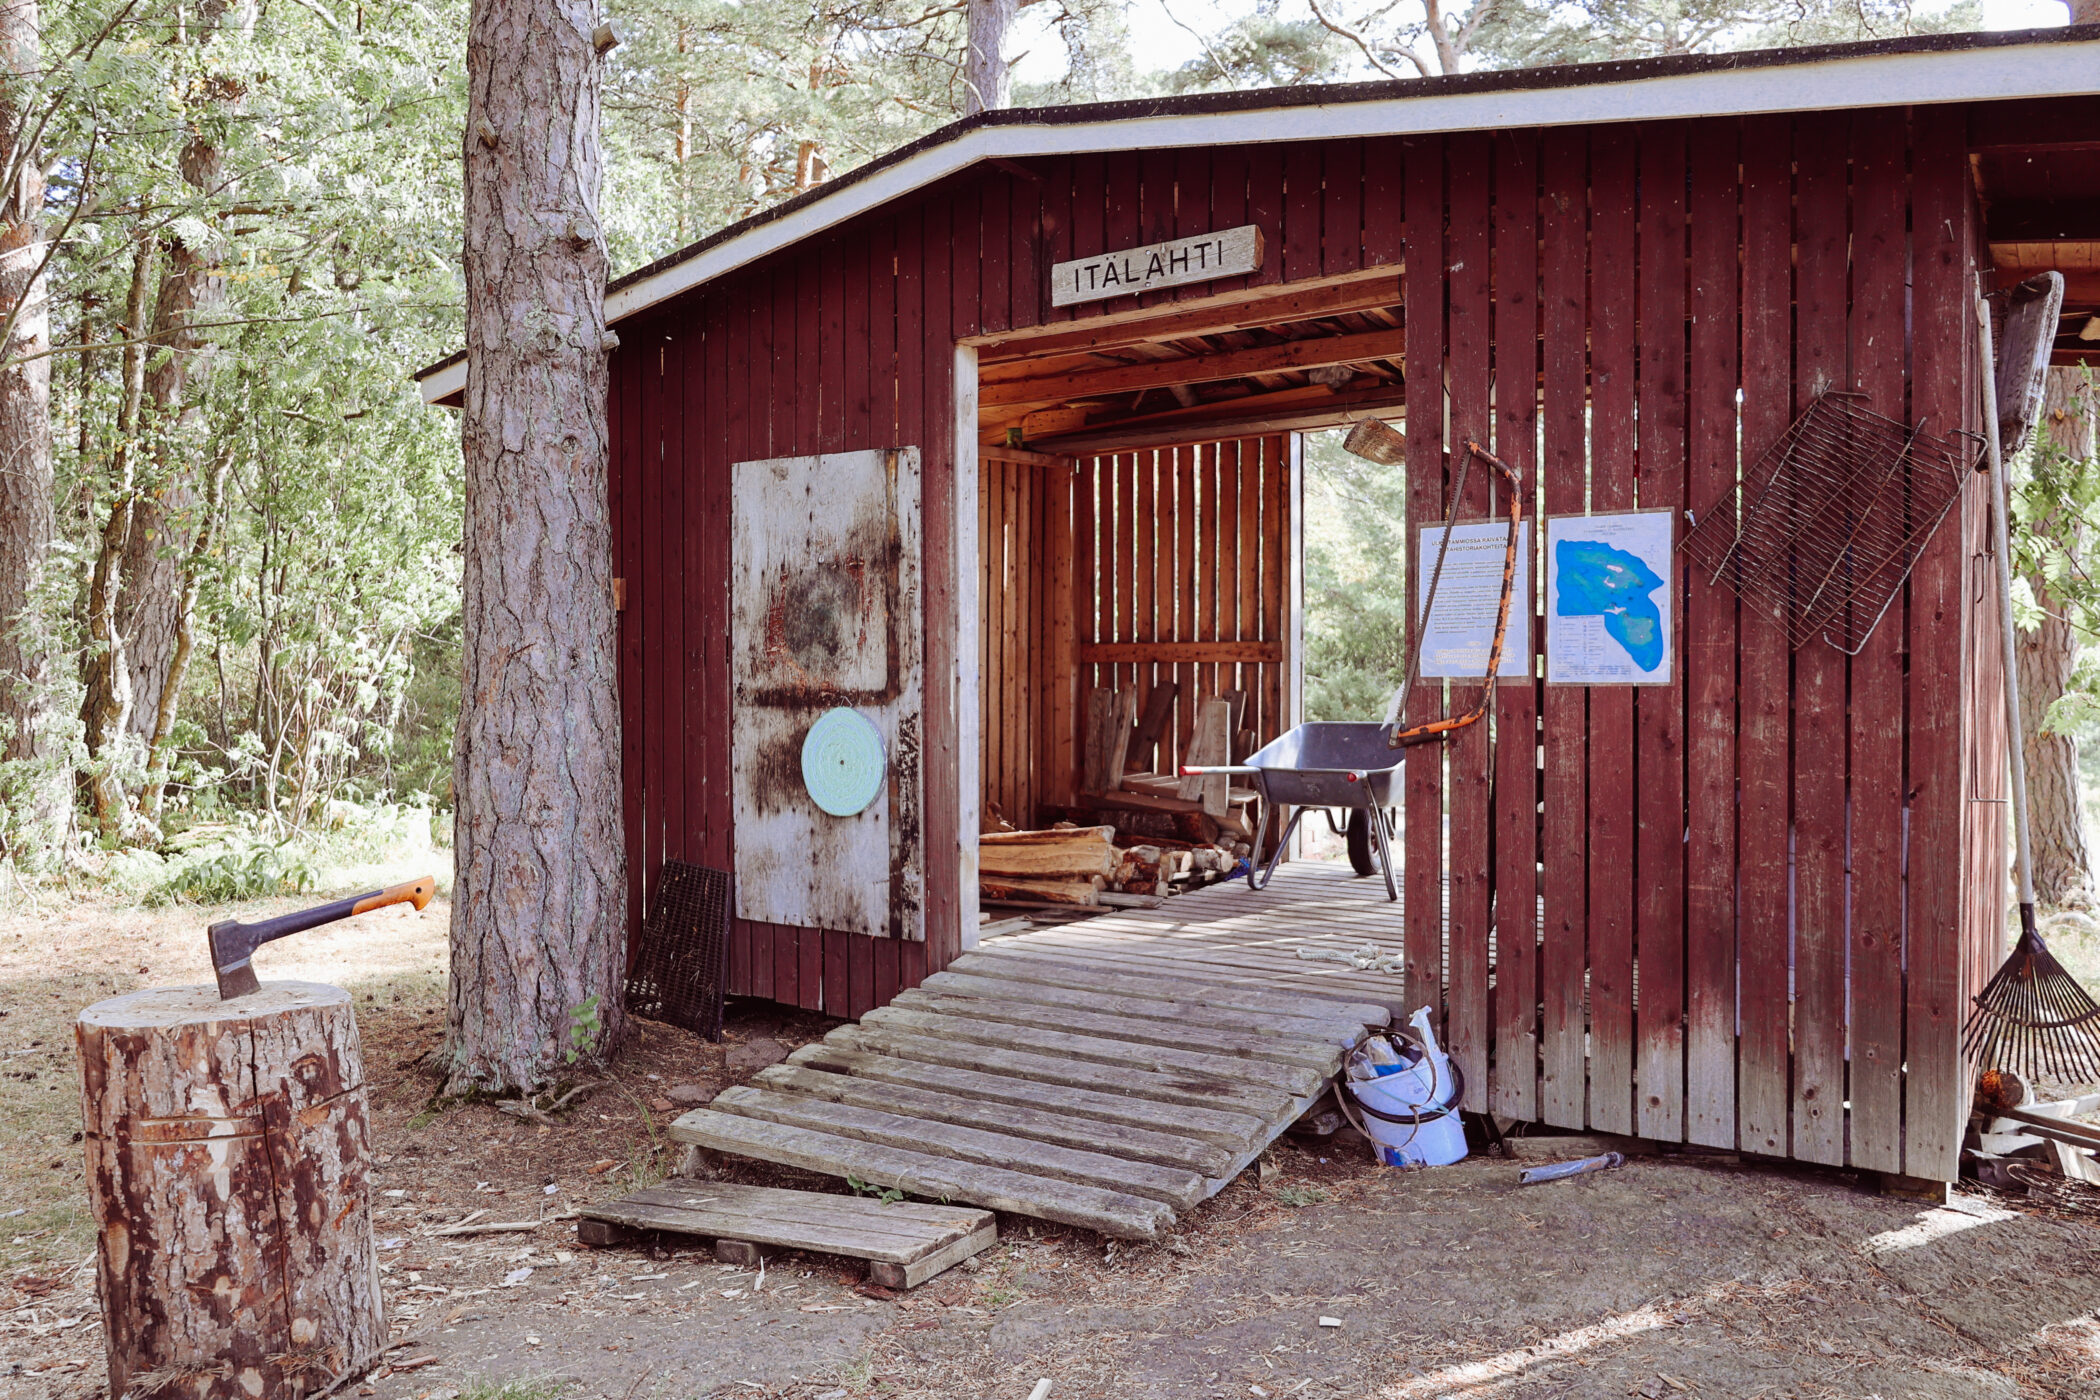 Ulko-Tammio phone-free island © Annika Ruohonen